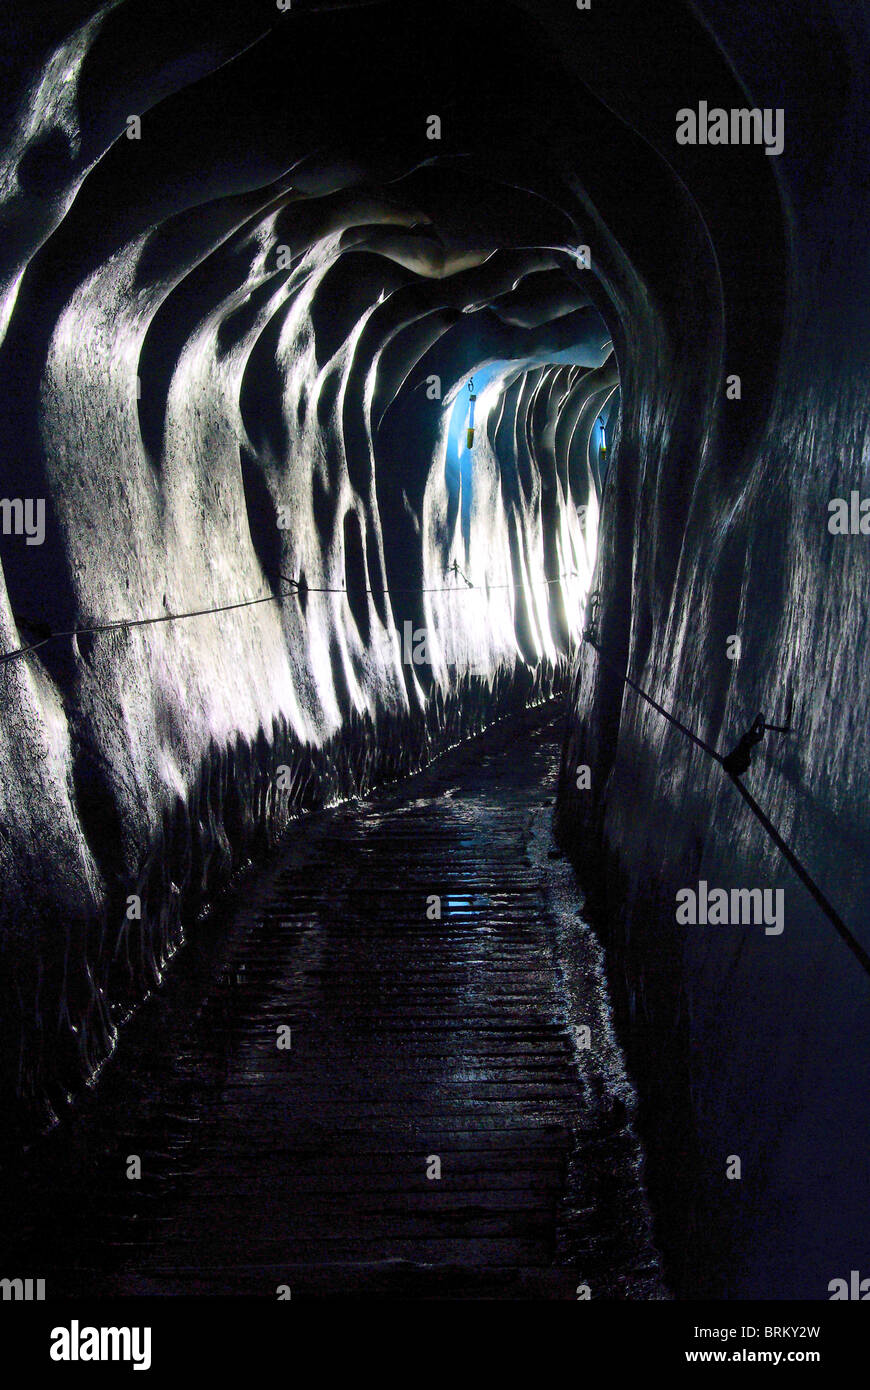 Gletschertunnel - tunnel in glacier 01 Stock Photo